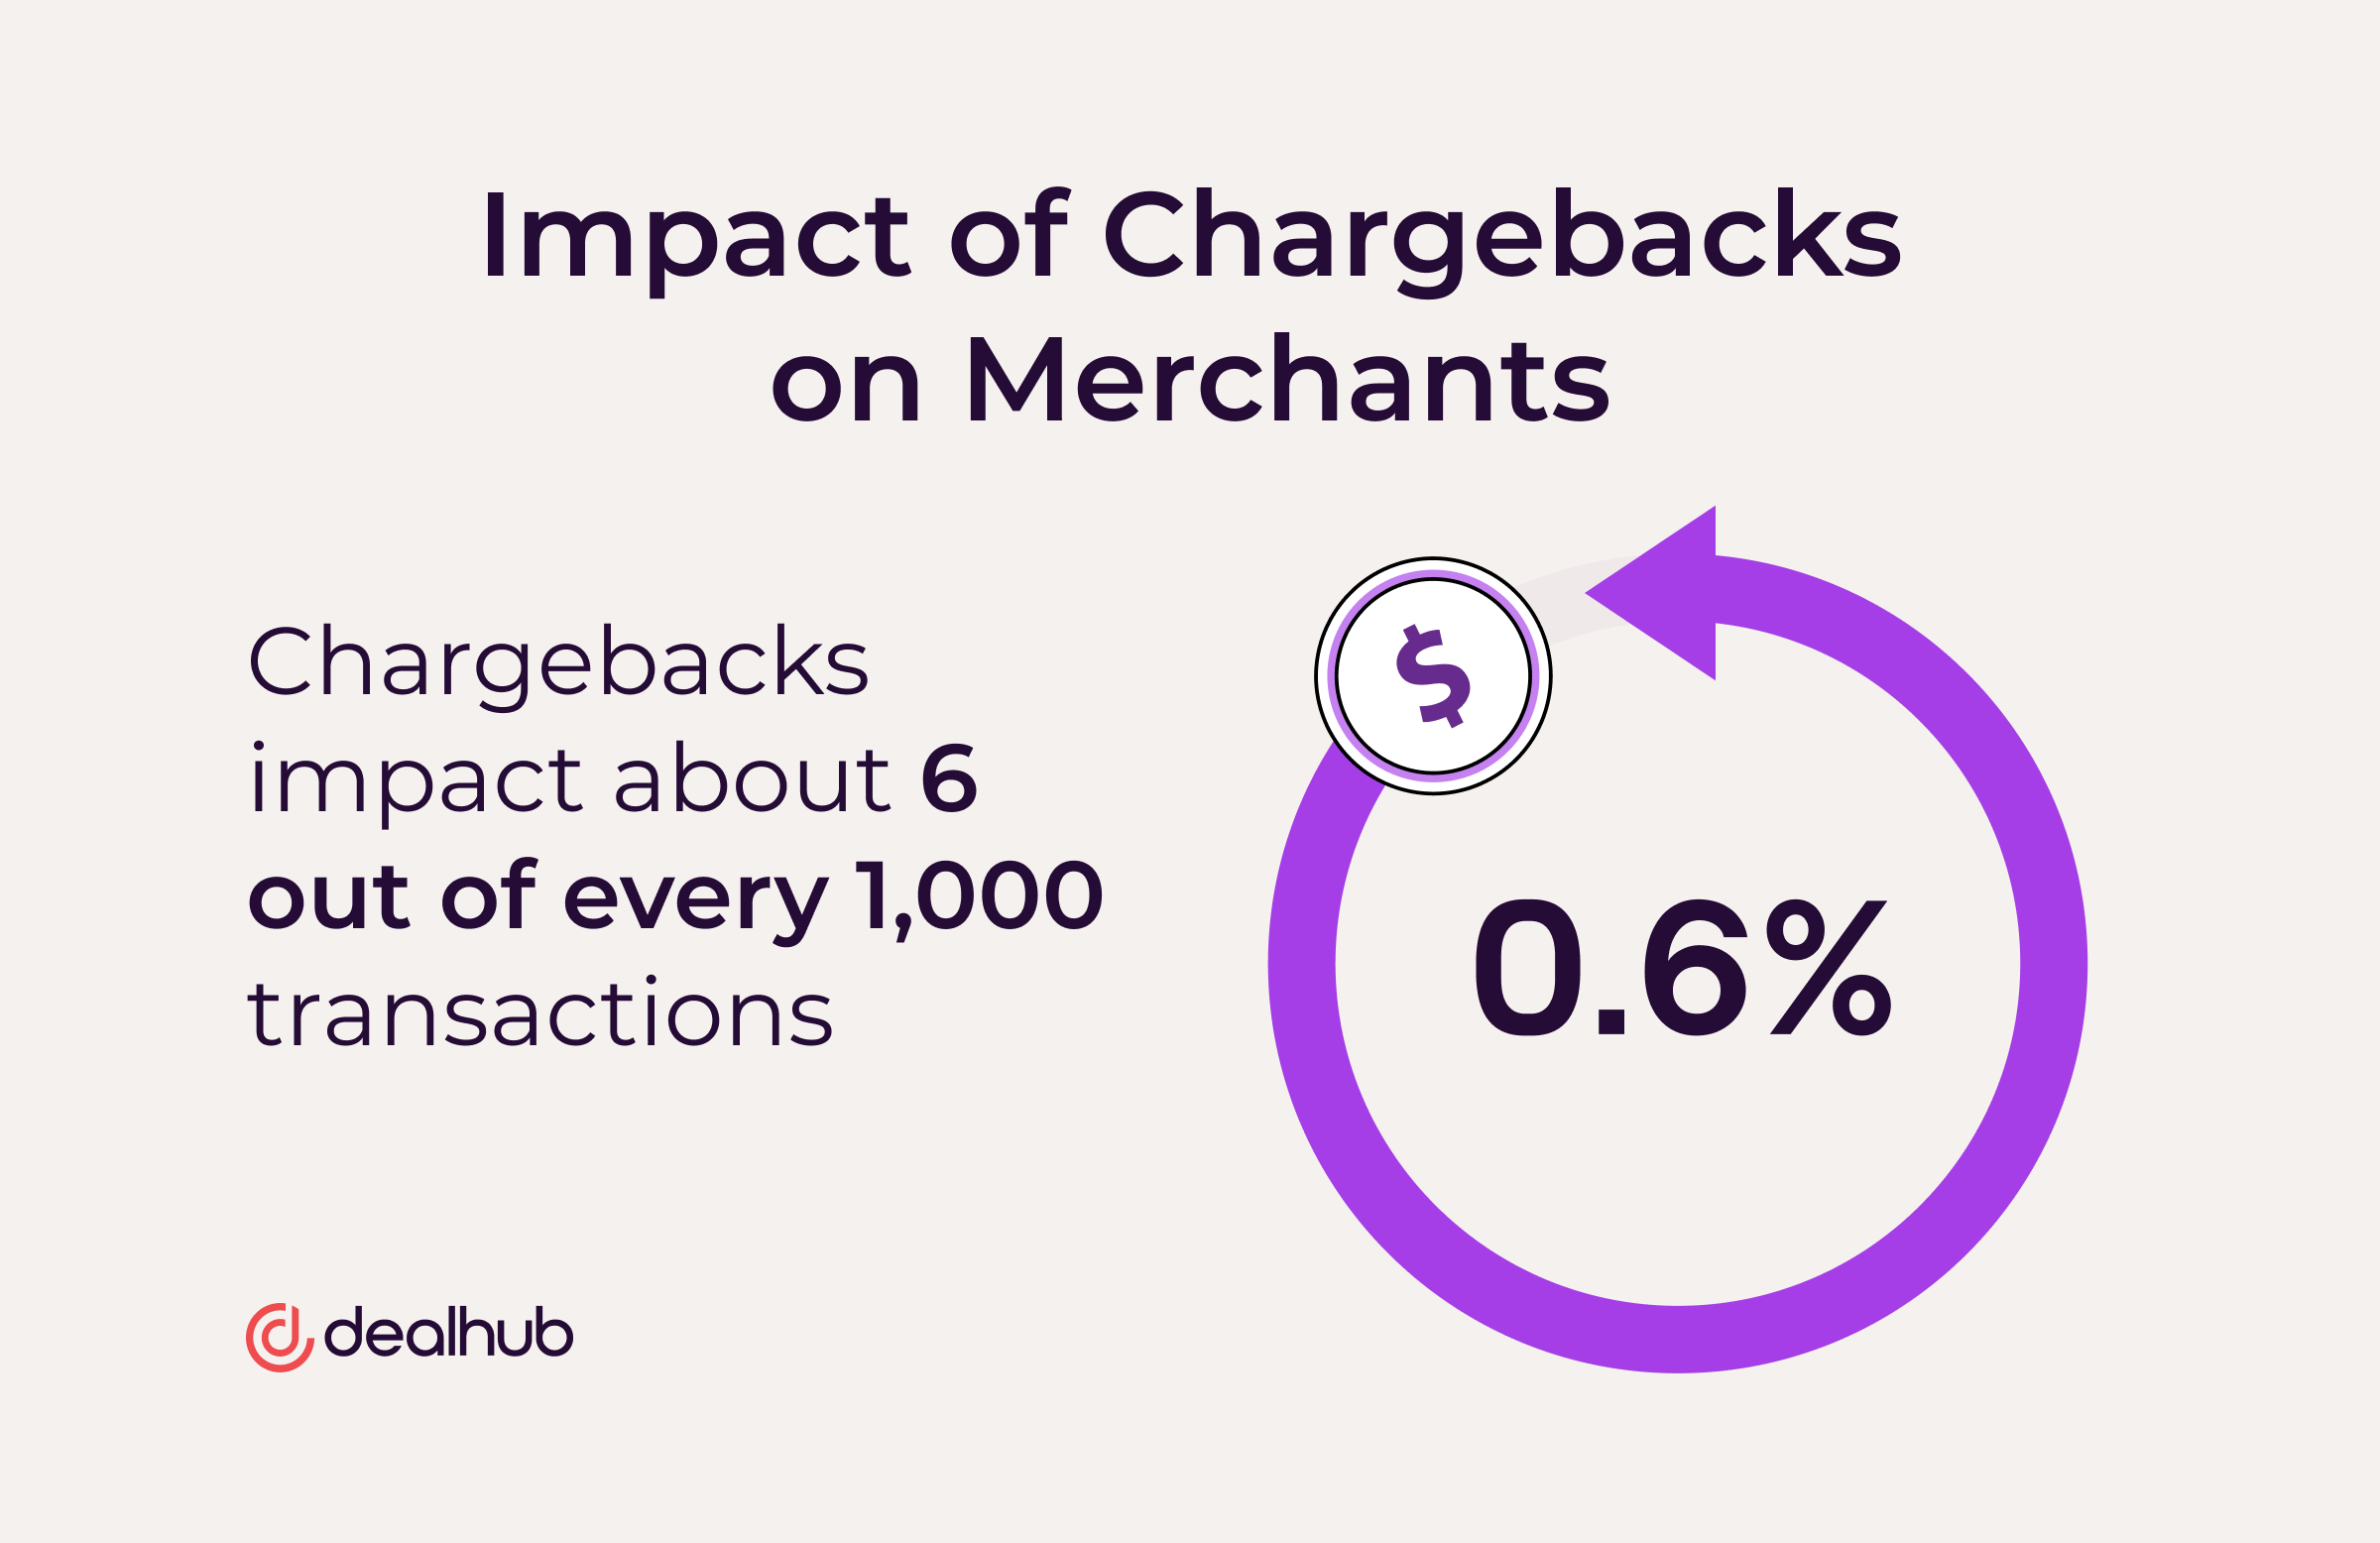 The Impact of Chargebacks on Merchants